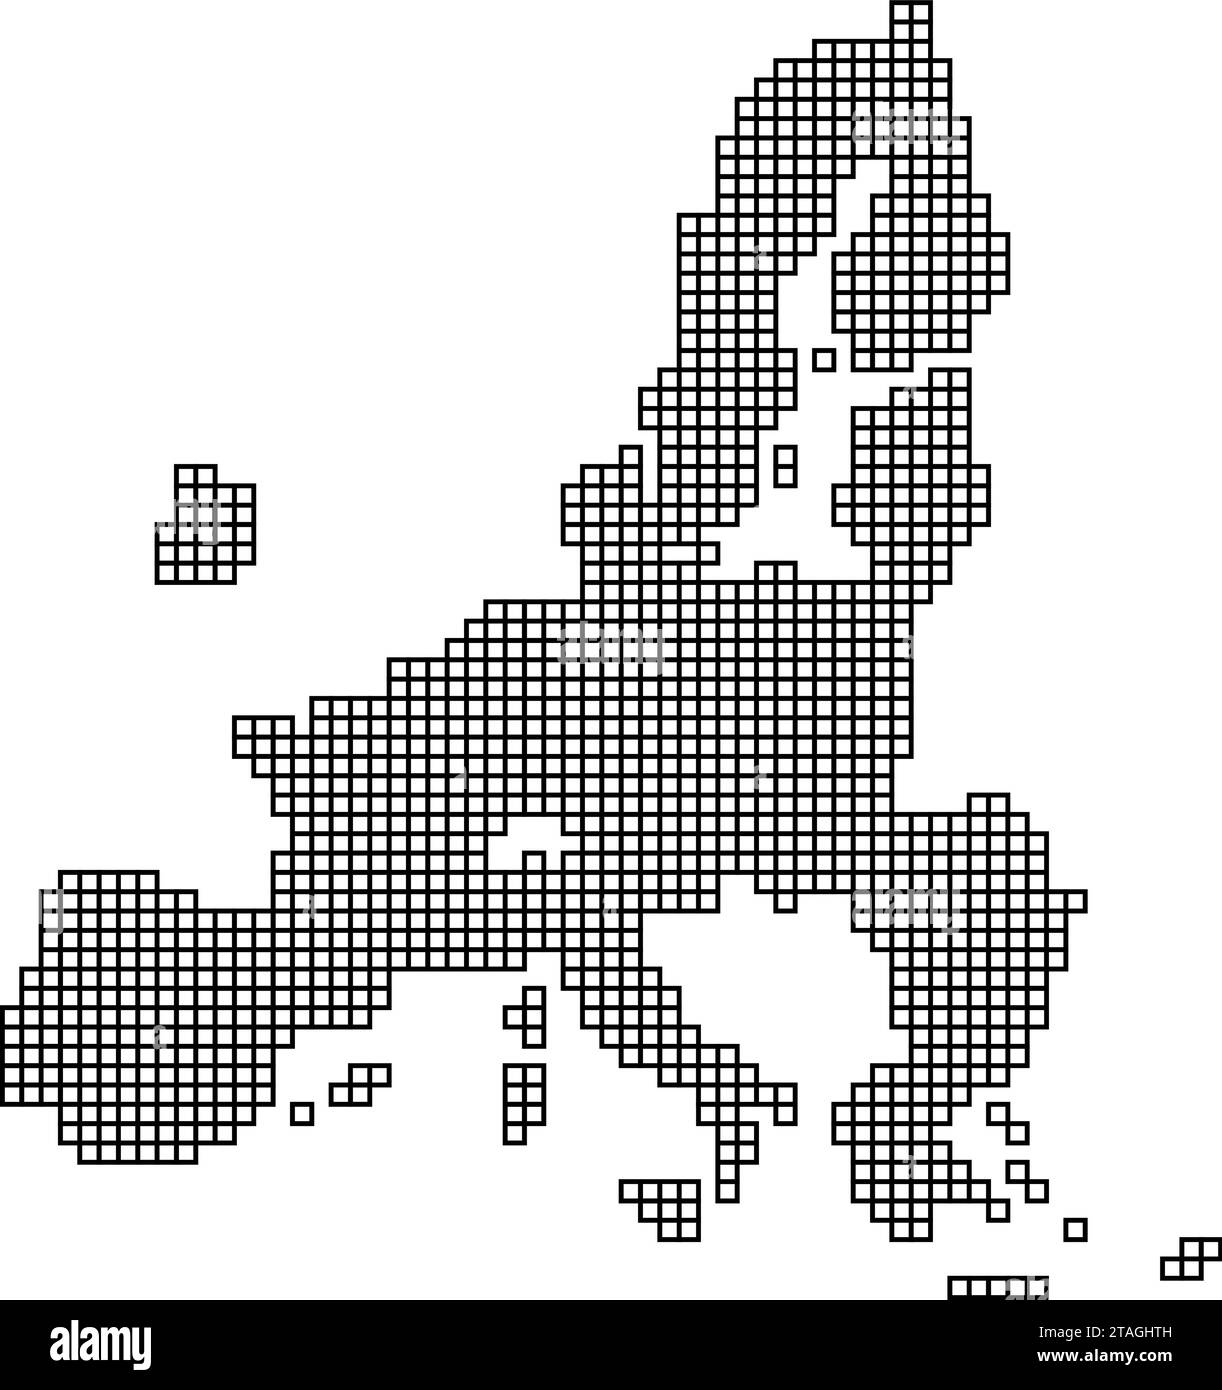 Silhouette de carte de l'Union européenne à partir de la structure de mosaïque de motif noir de carrés. Illustration vectorielle. Illustration de Vecteur